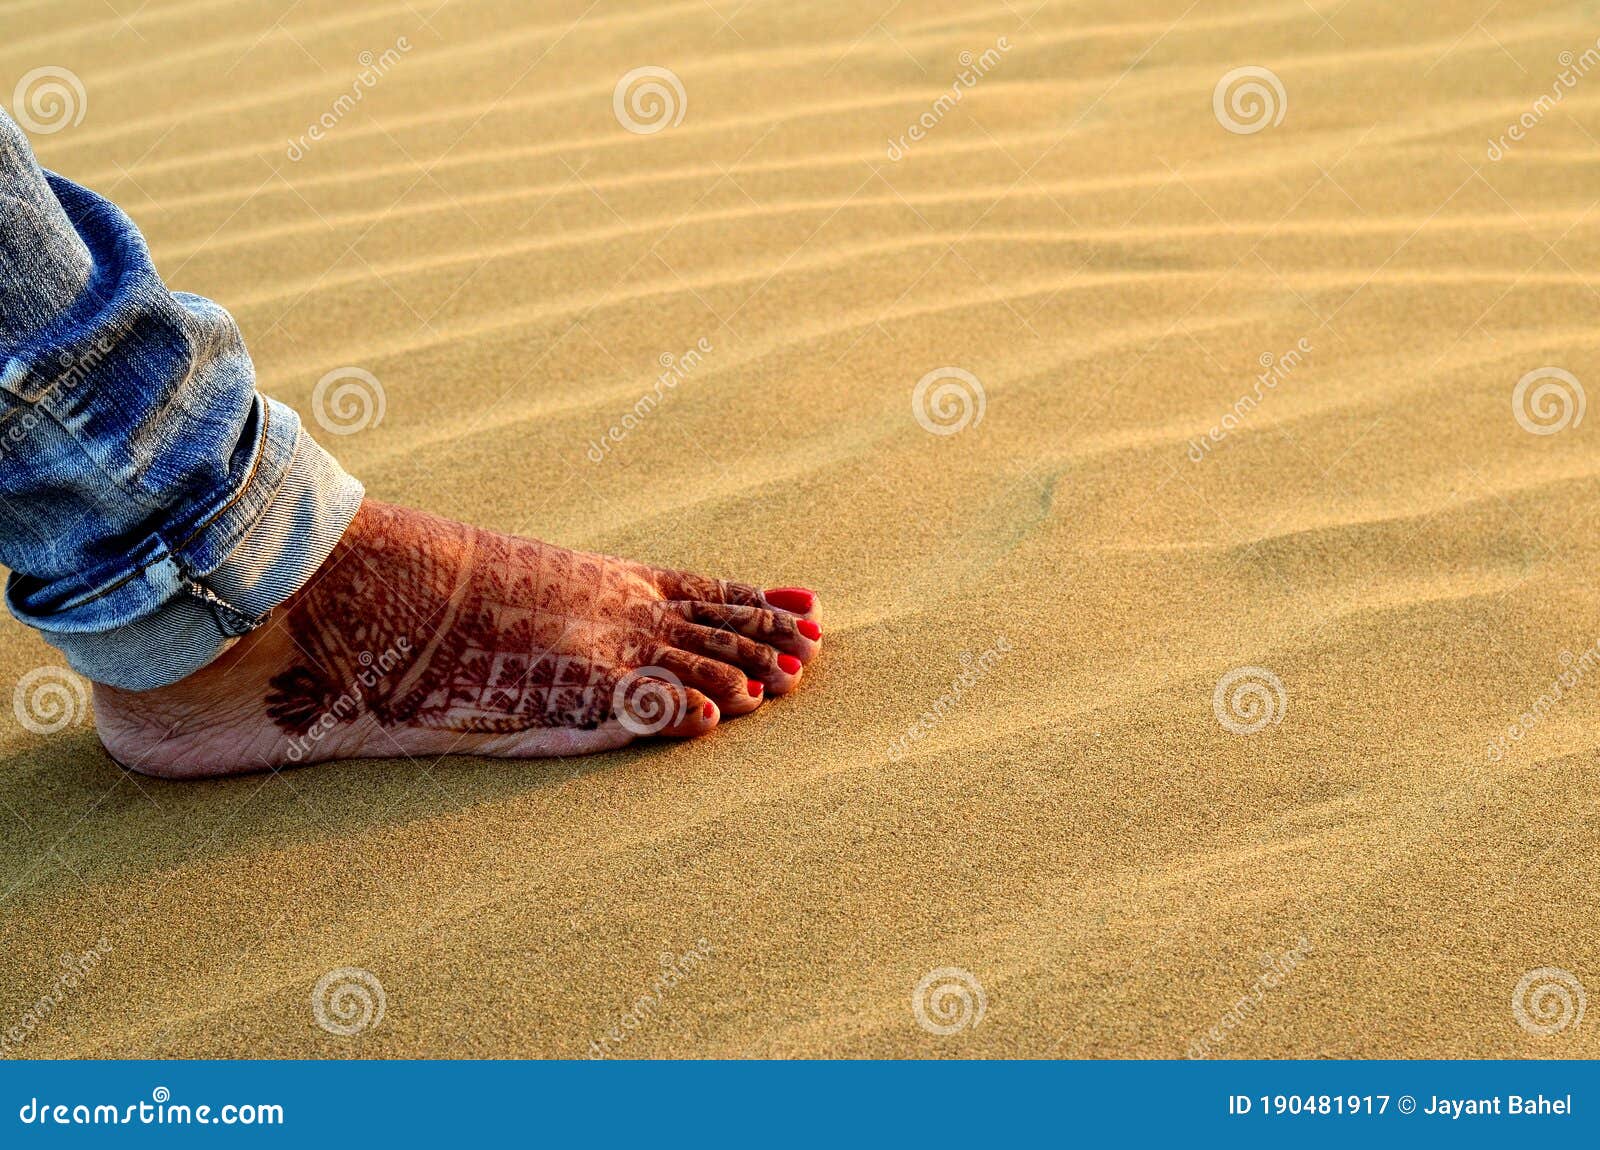 Dune feet